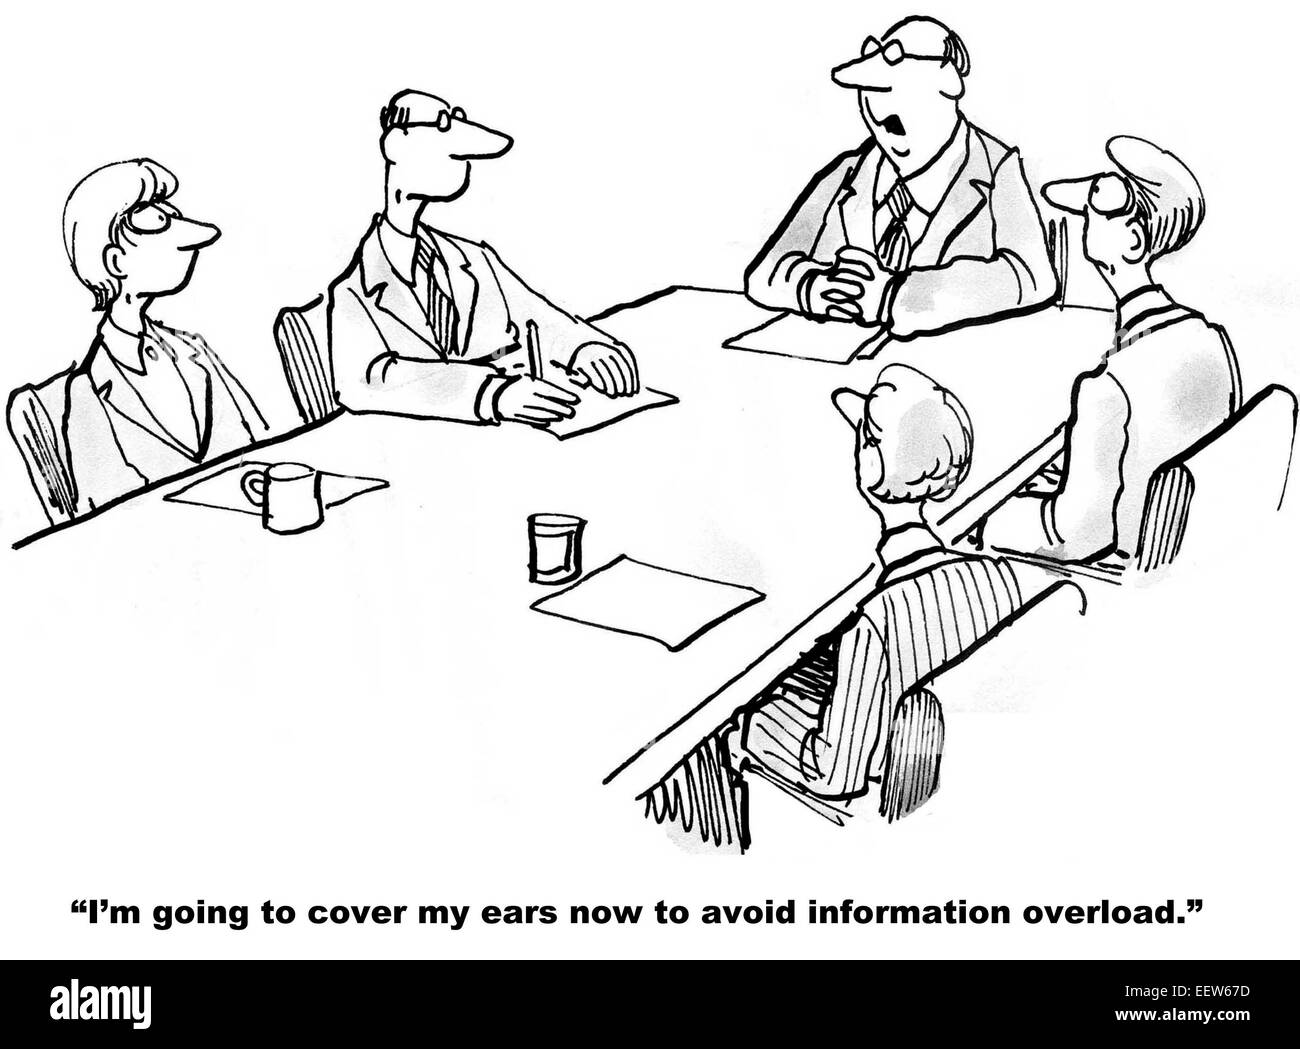 Caricatura de empresarios en la reunión y uno está diciendo que va a cubrir sus oídos para evitar la sobrecarga de información. Foto de stock